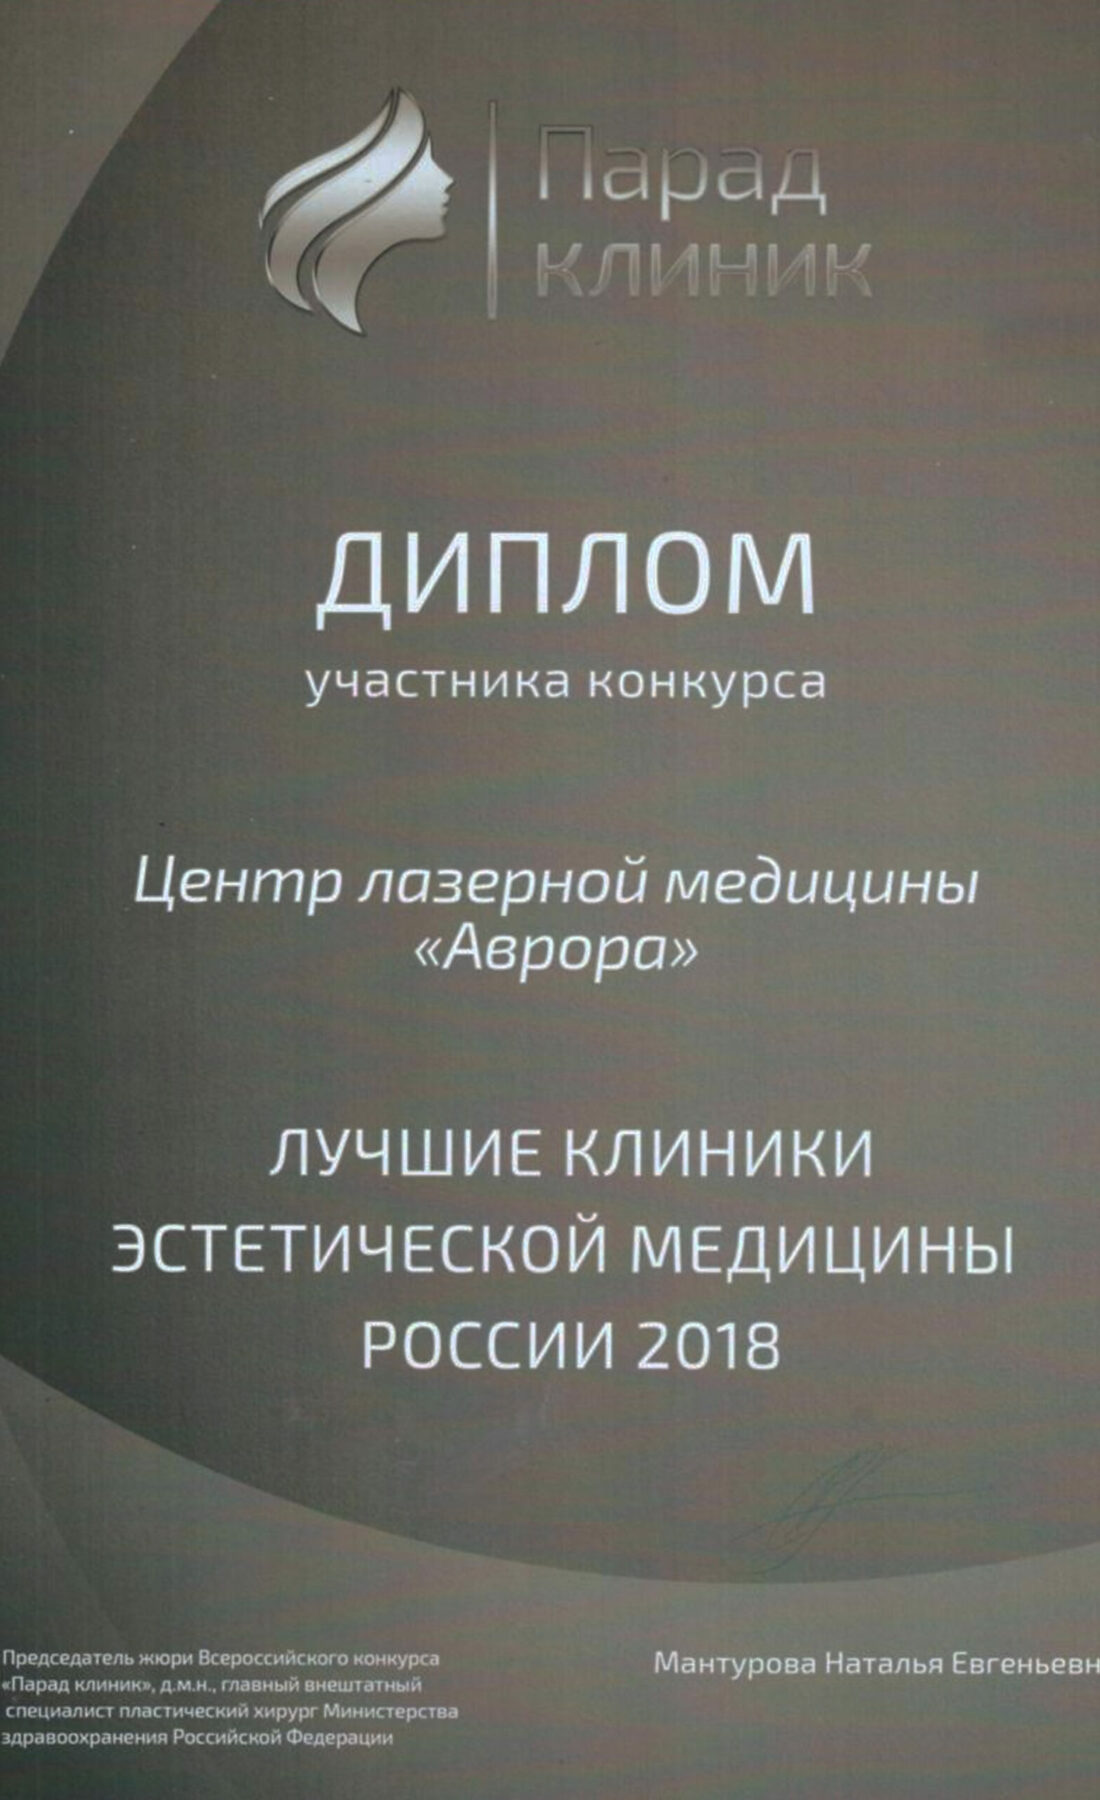 Диплом в номинации "Лучшие клиники России"